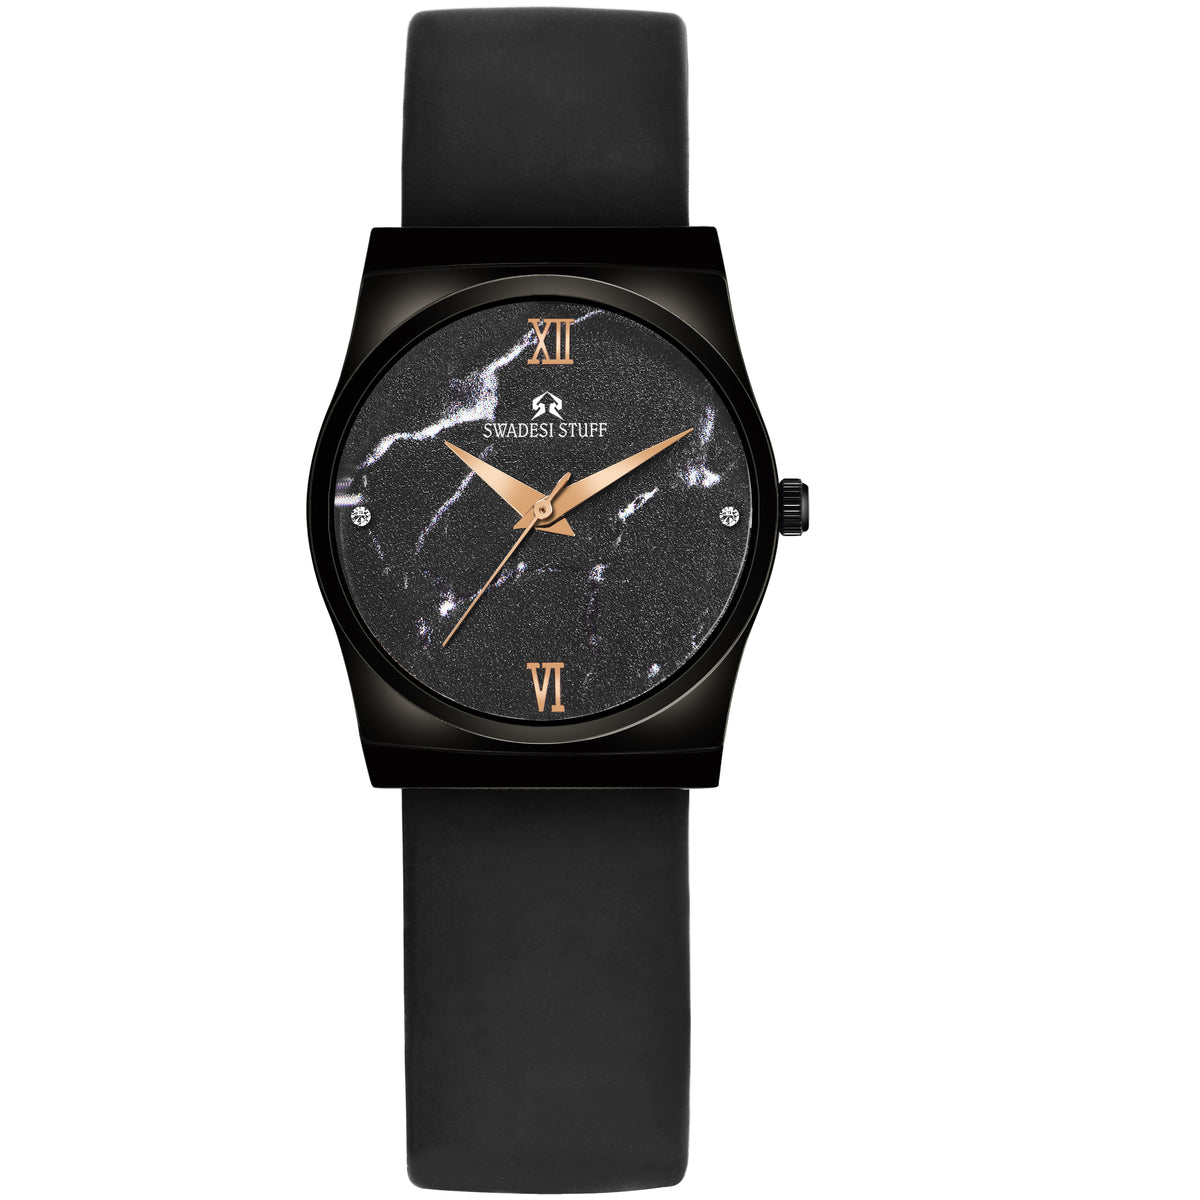 Luna - Black - Premium & Luxurious Watch For Women